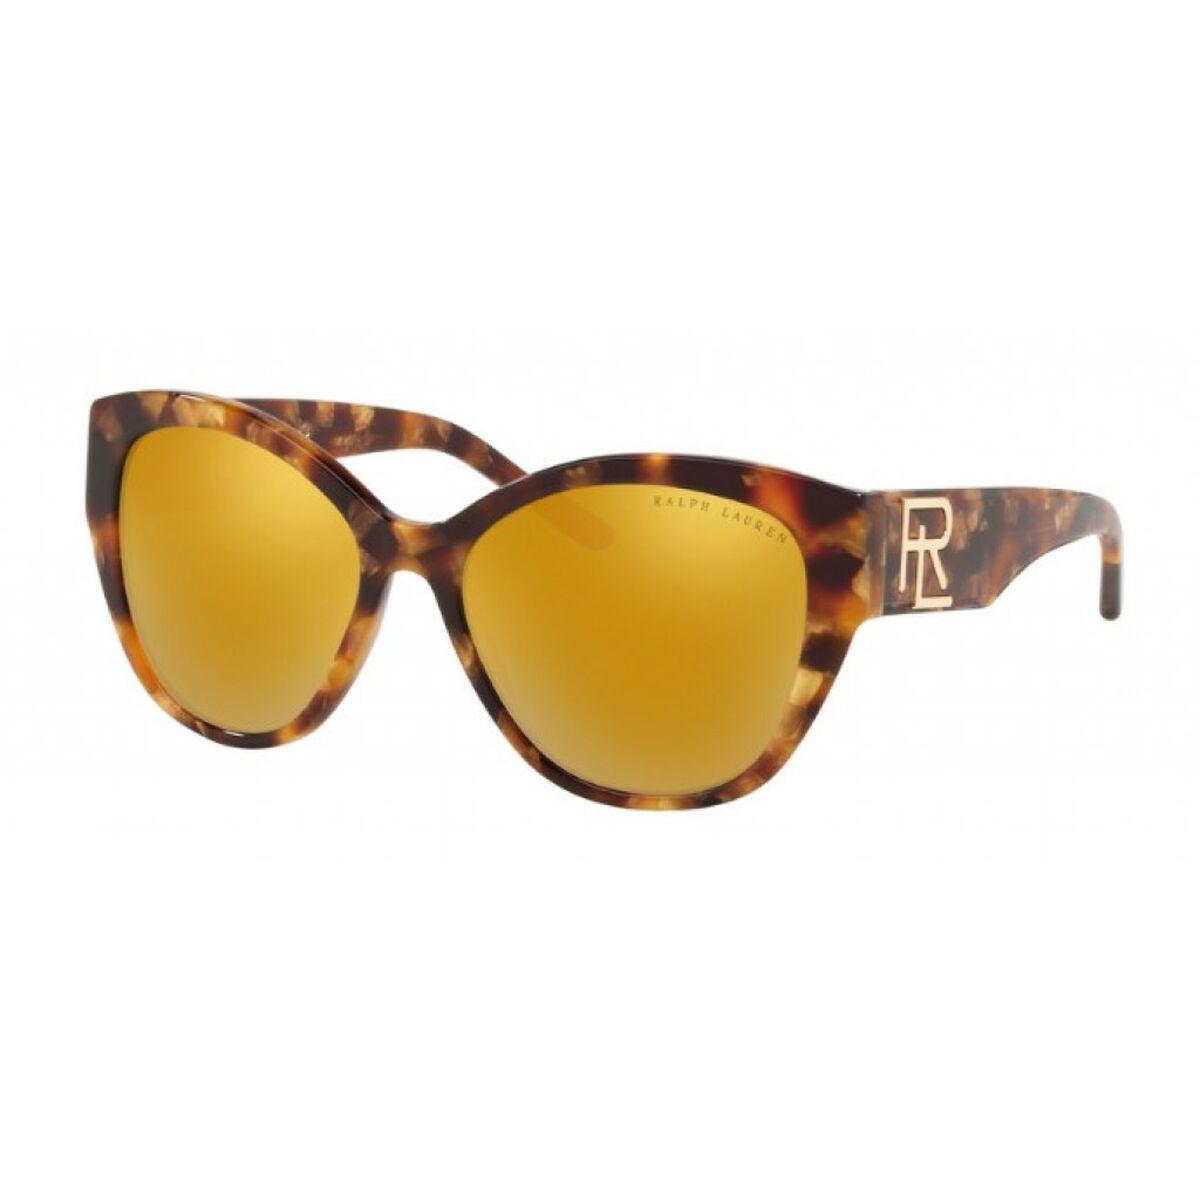 Ladies'Sunglasses Ralph Lauren